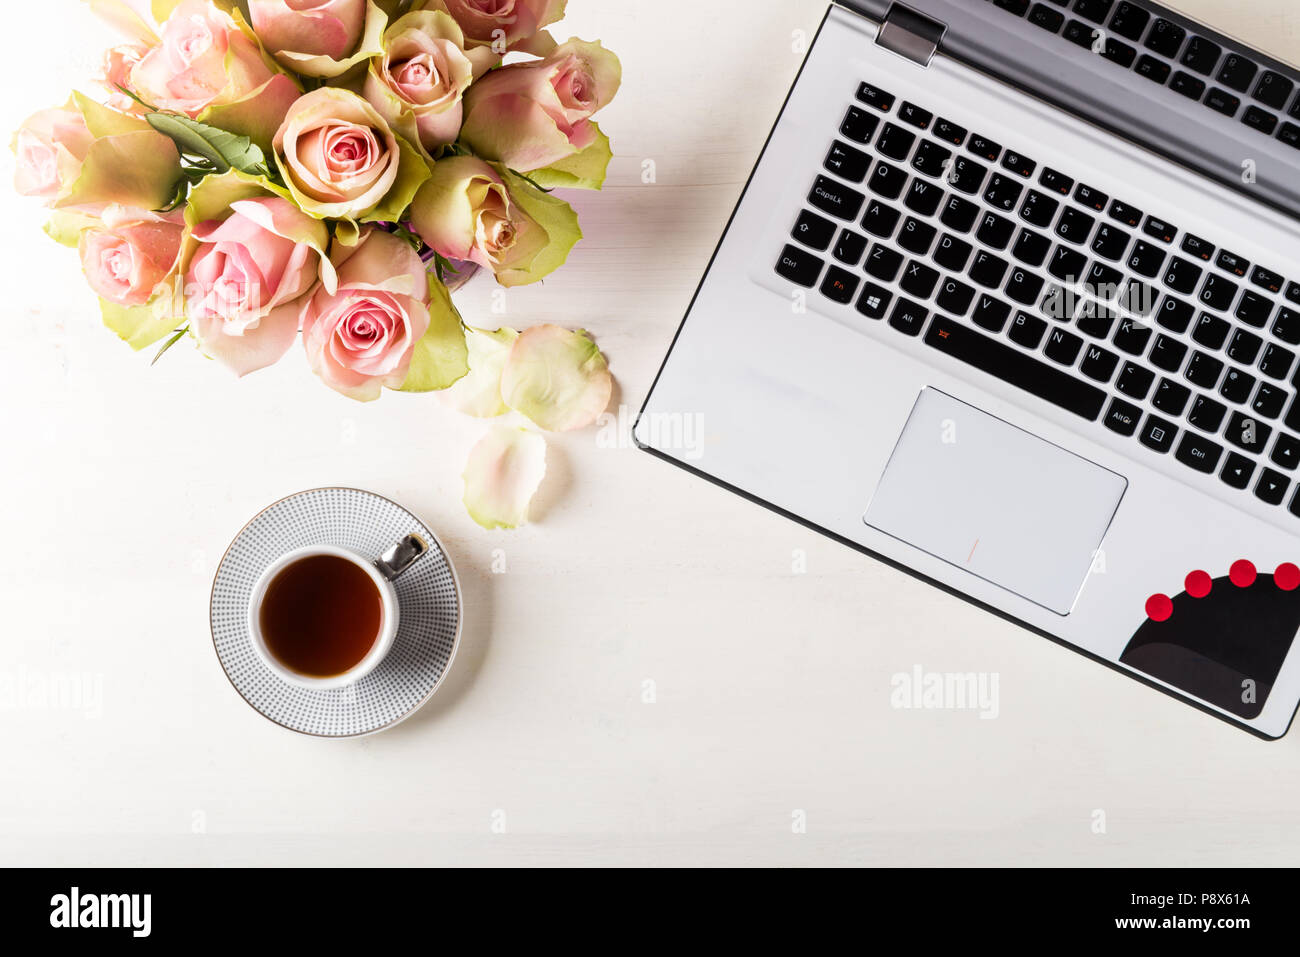 Business femminile mockup con laptop, bouquet di rose e la tazza di caffè, flatlay bianco su sfondo di legno con copyspace Foto Stock